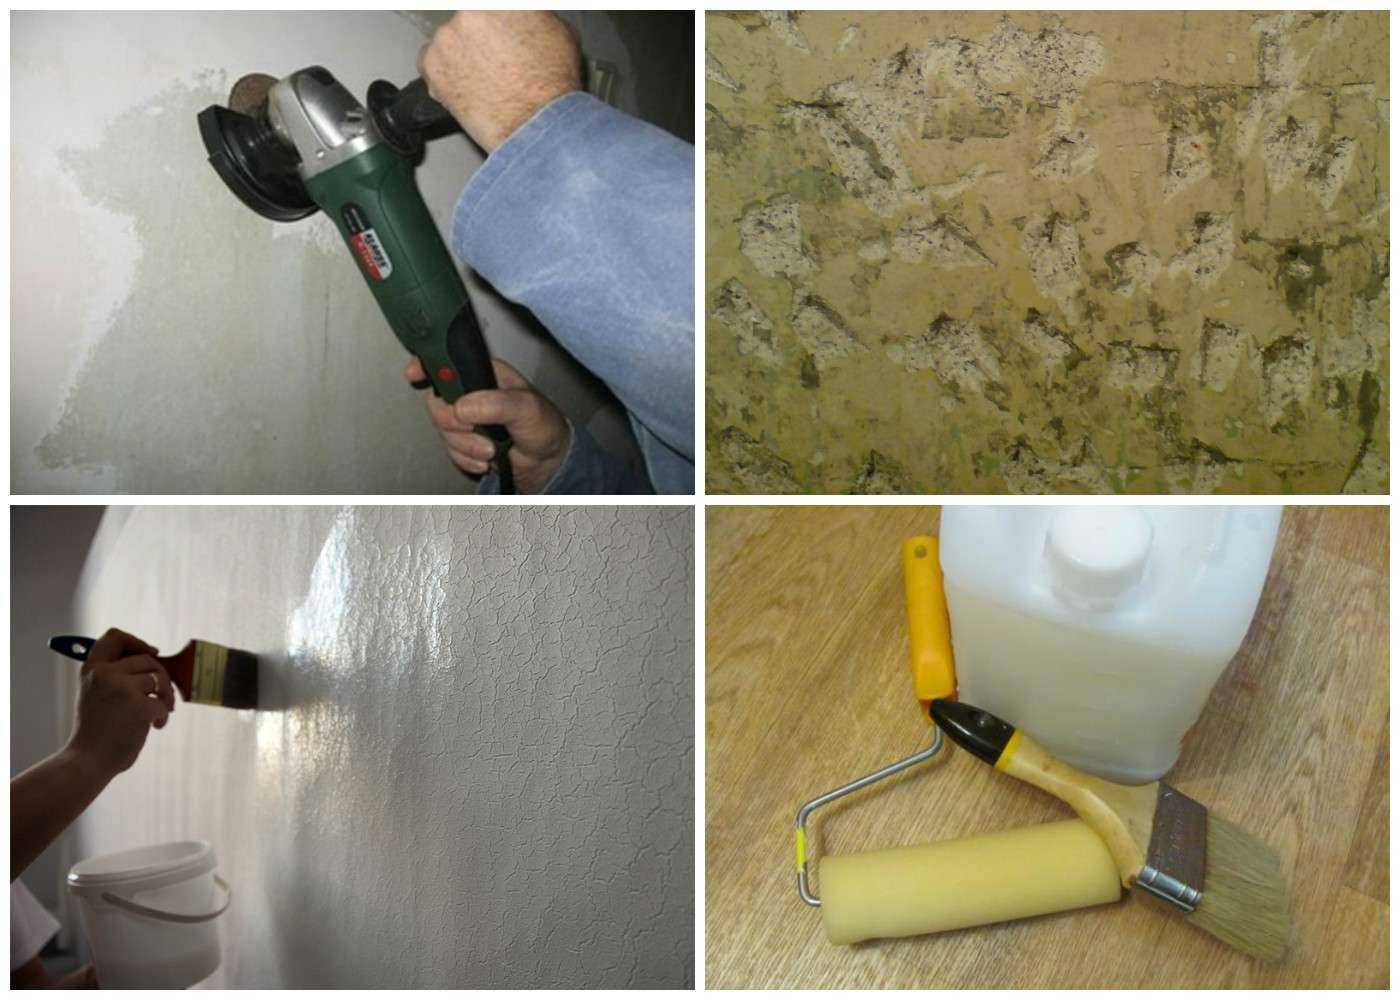 Снять старую краску со стены можно при помощи различных инструментов и смывок Рассмотрим действенные способы, которые помогут избавиться от покрытия